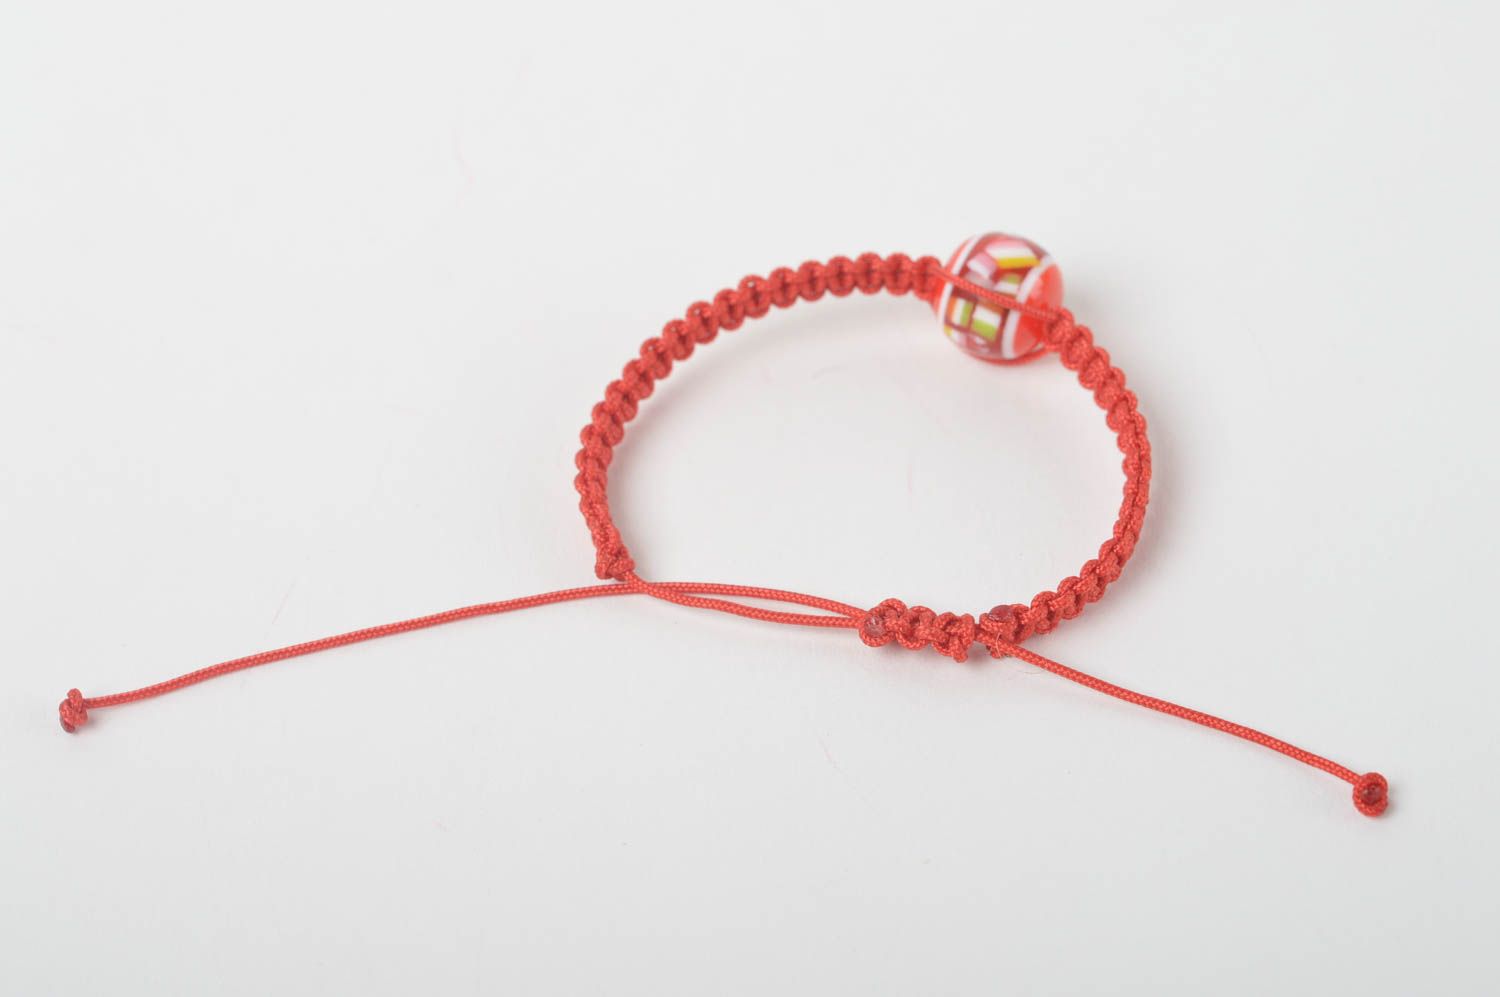 Textil Armband Armschmuck Damen Mode Schmuck Geschenk für Mädchen rot handmade foto 5